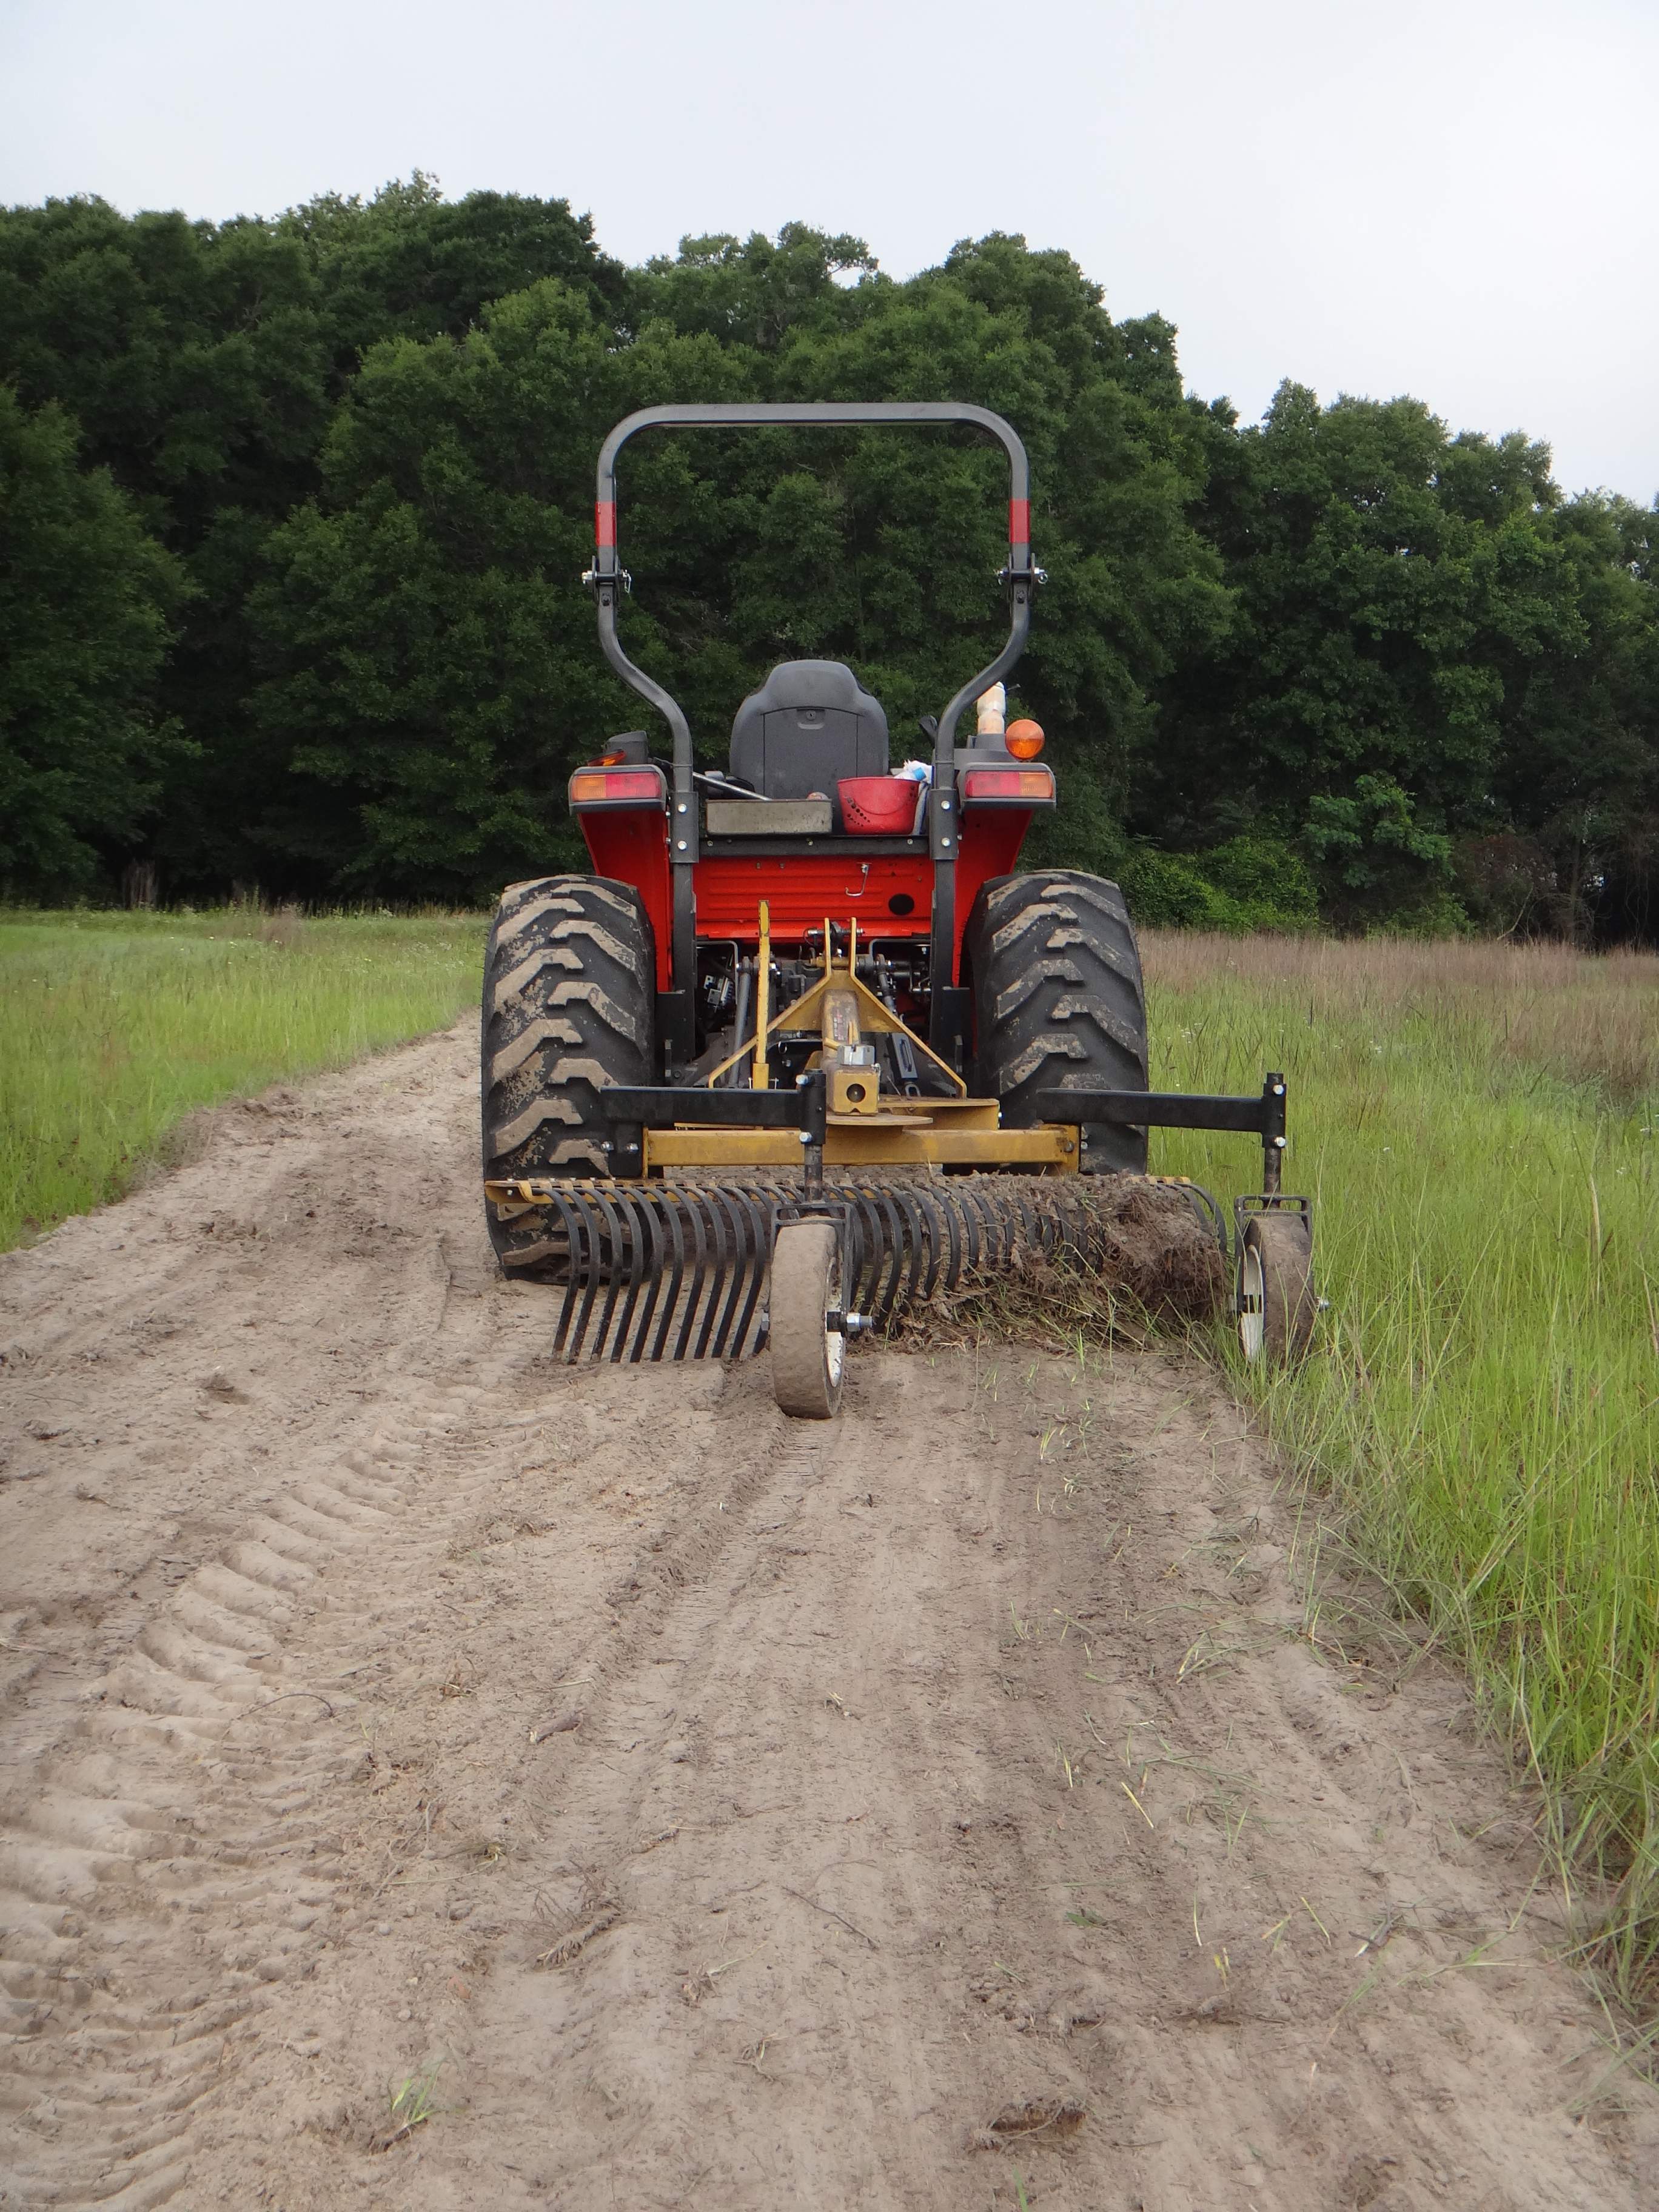 County Line Tsc Landscape Rake, Tractor Landscape Rake